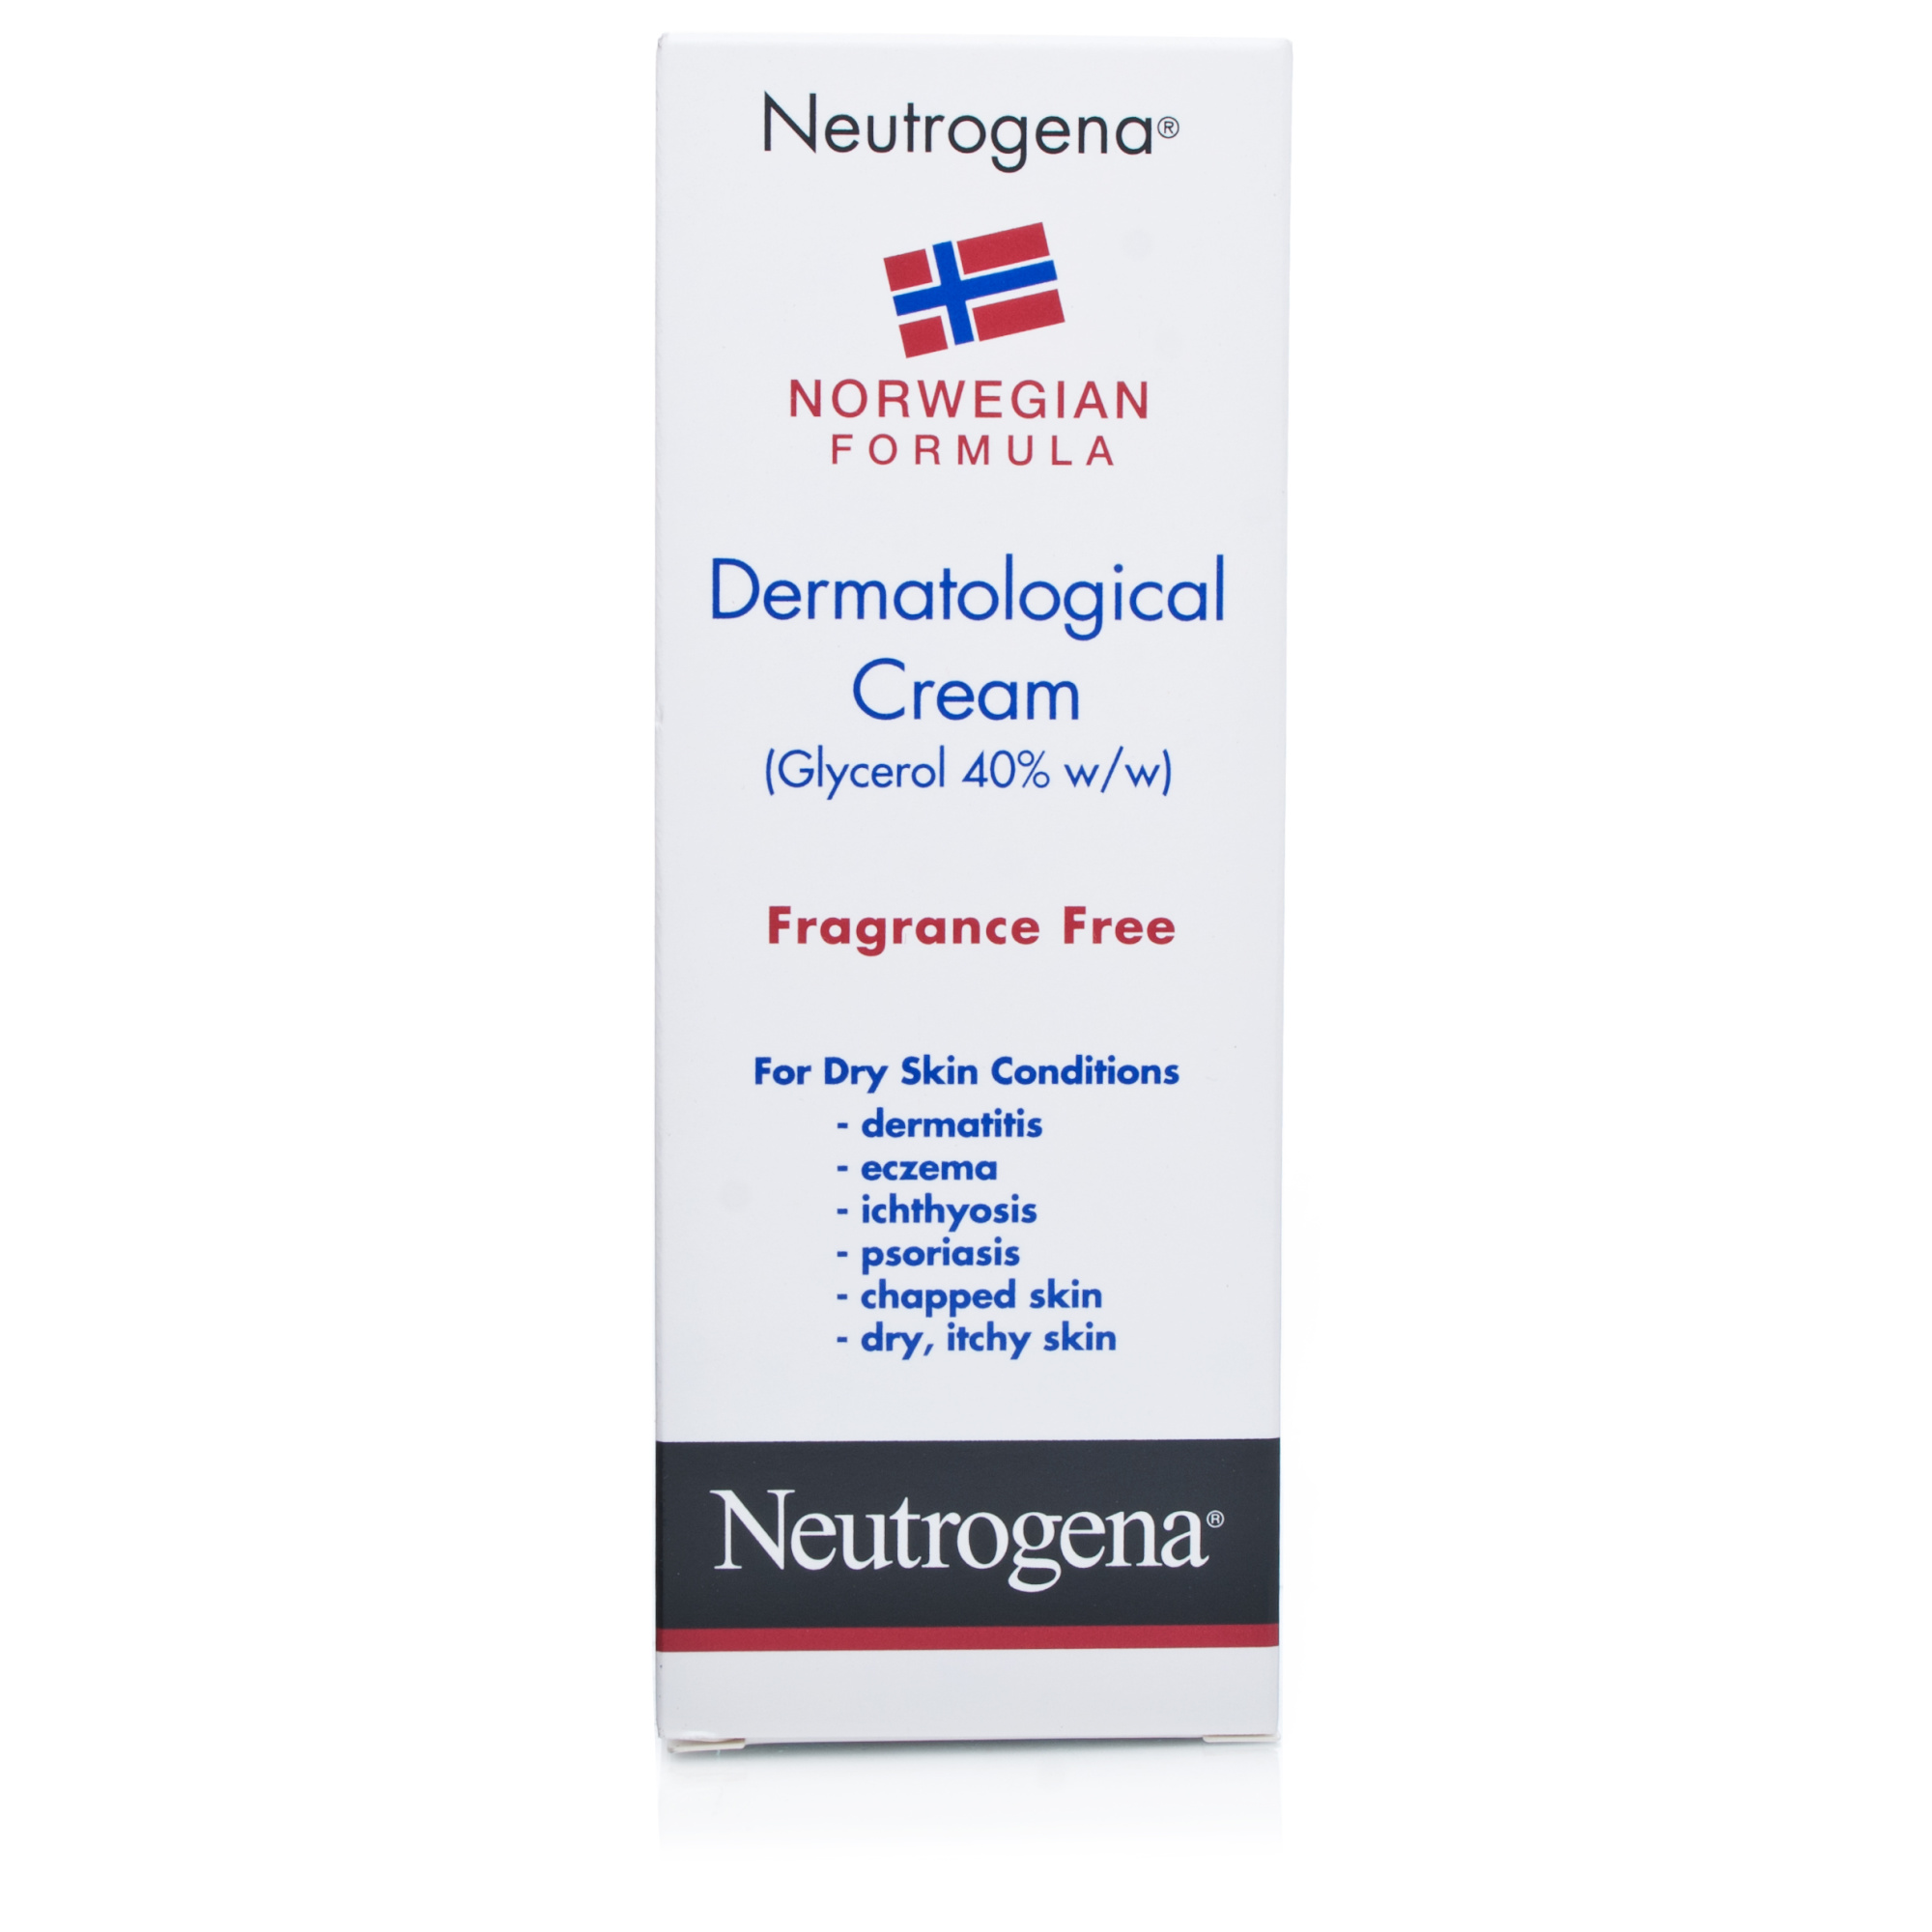 NEUTROGENA NORWEGIAN FORMULA® Dermatological Cream - Dry ...